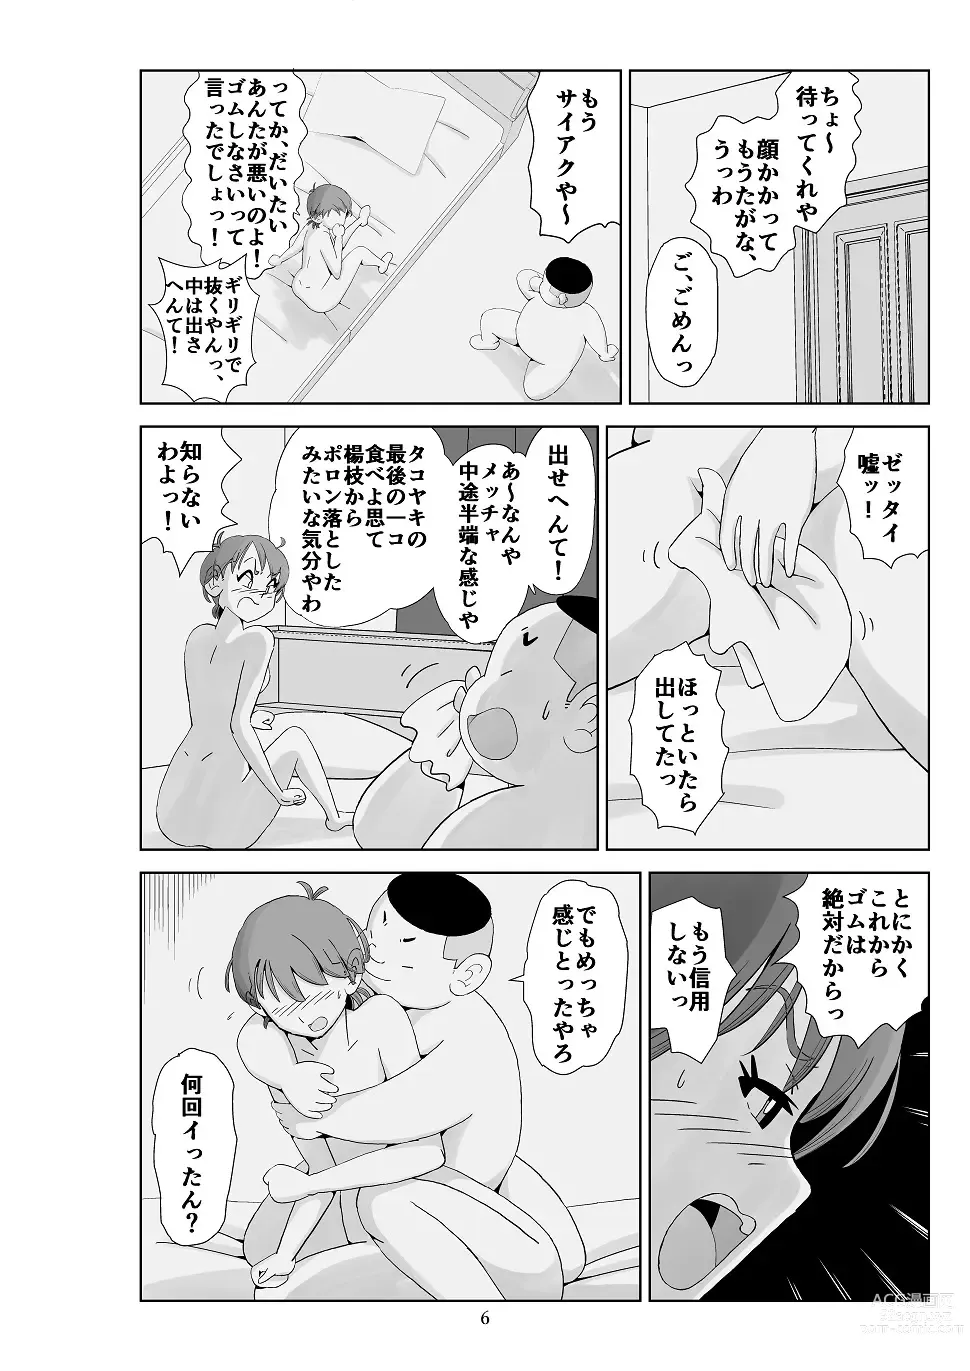 Page 7 of doujinshi Futoshi 3